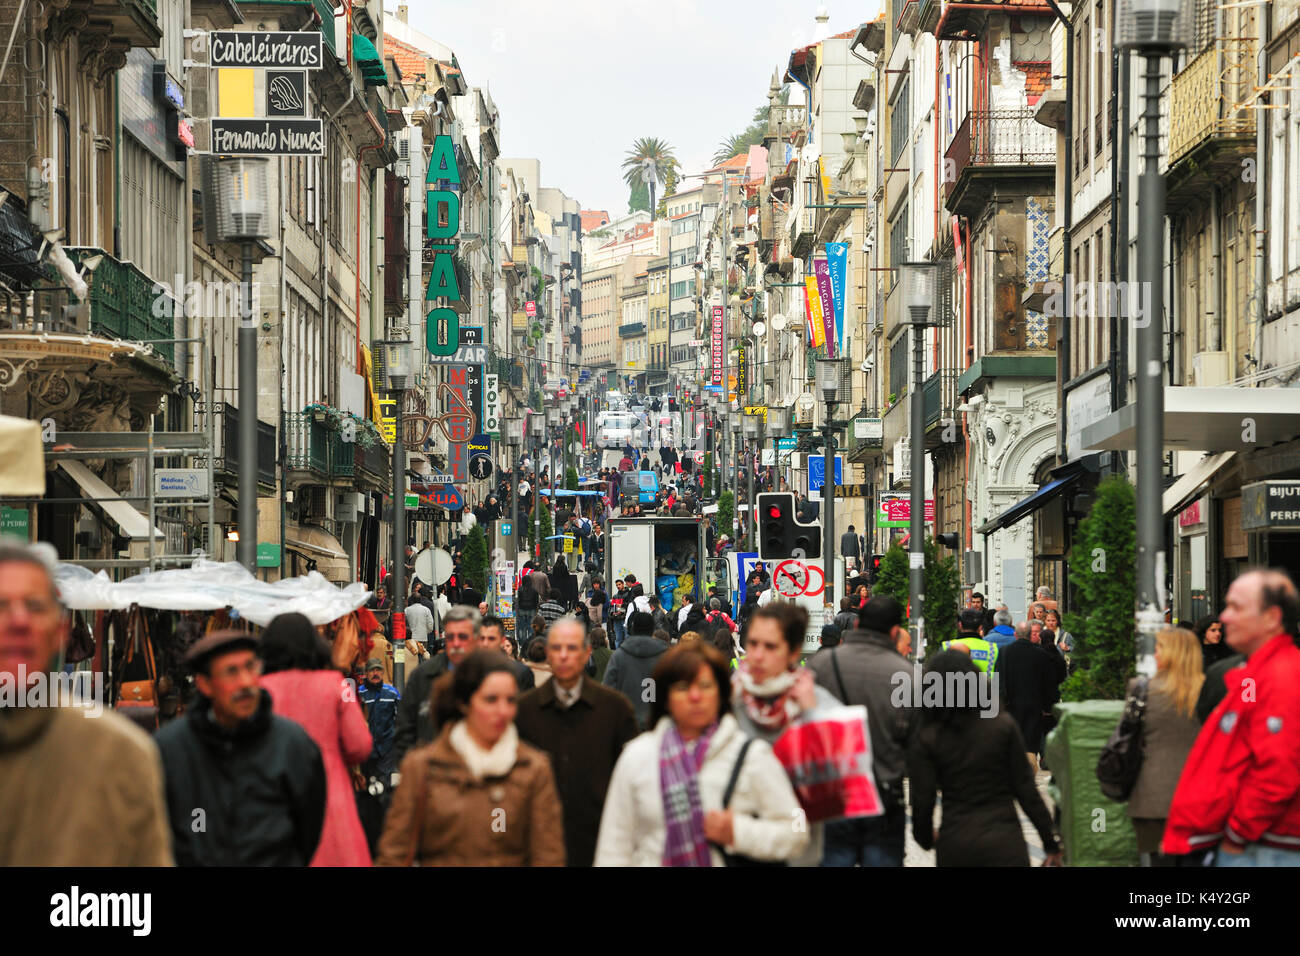 Santa Catarina street, the main shopping street in Porto. Portugal Stock Photo